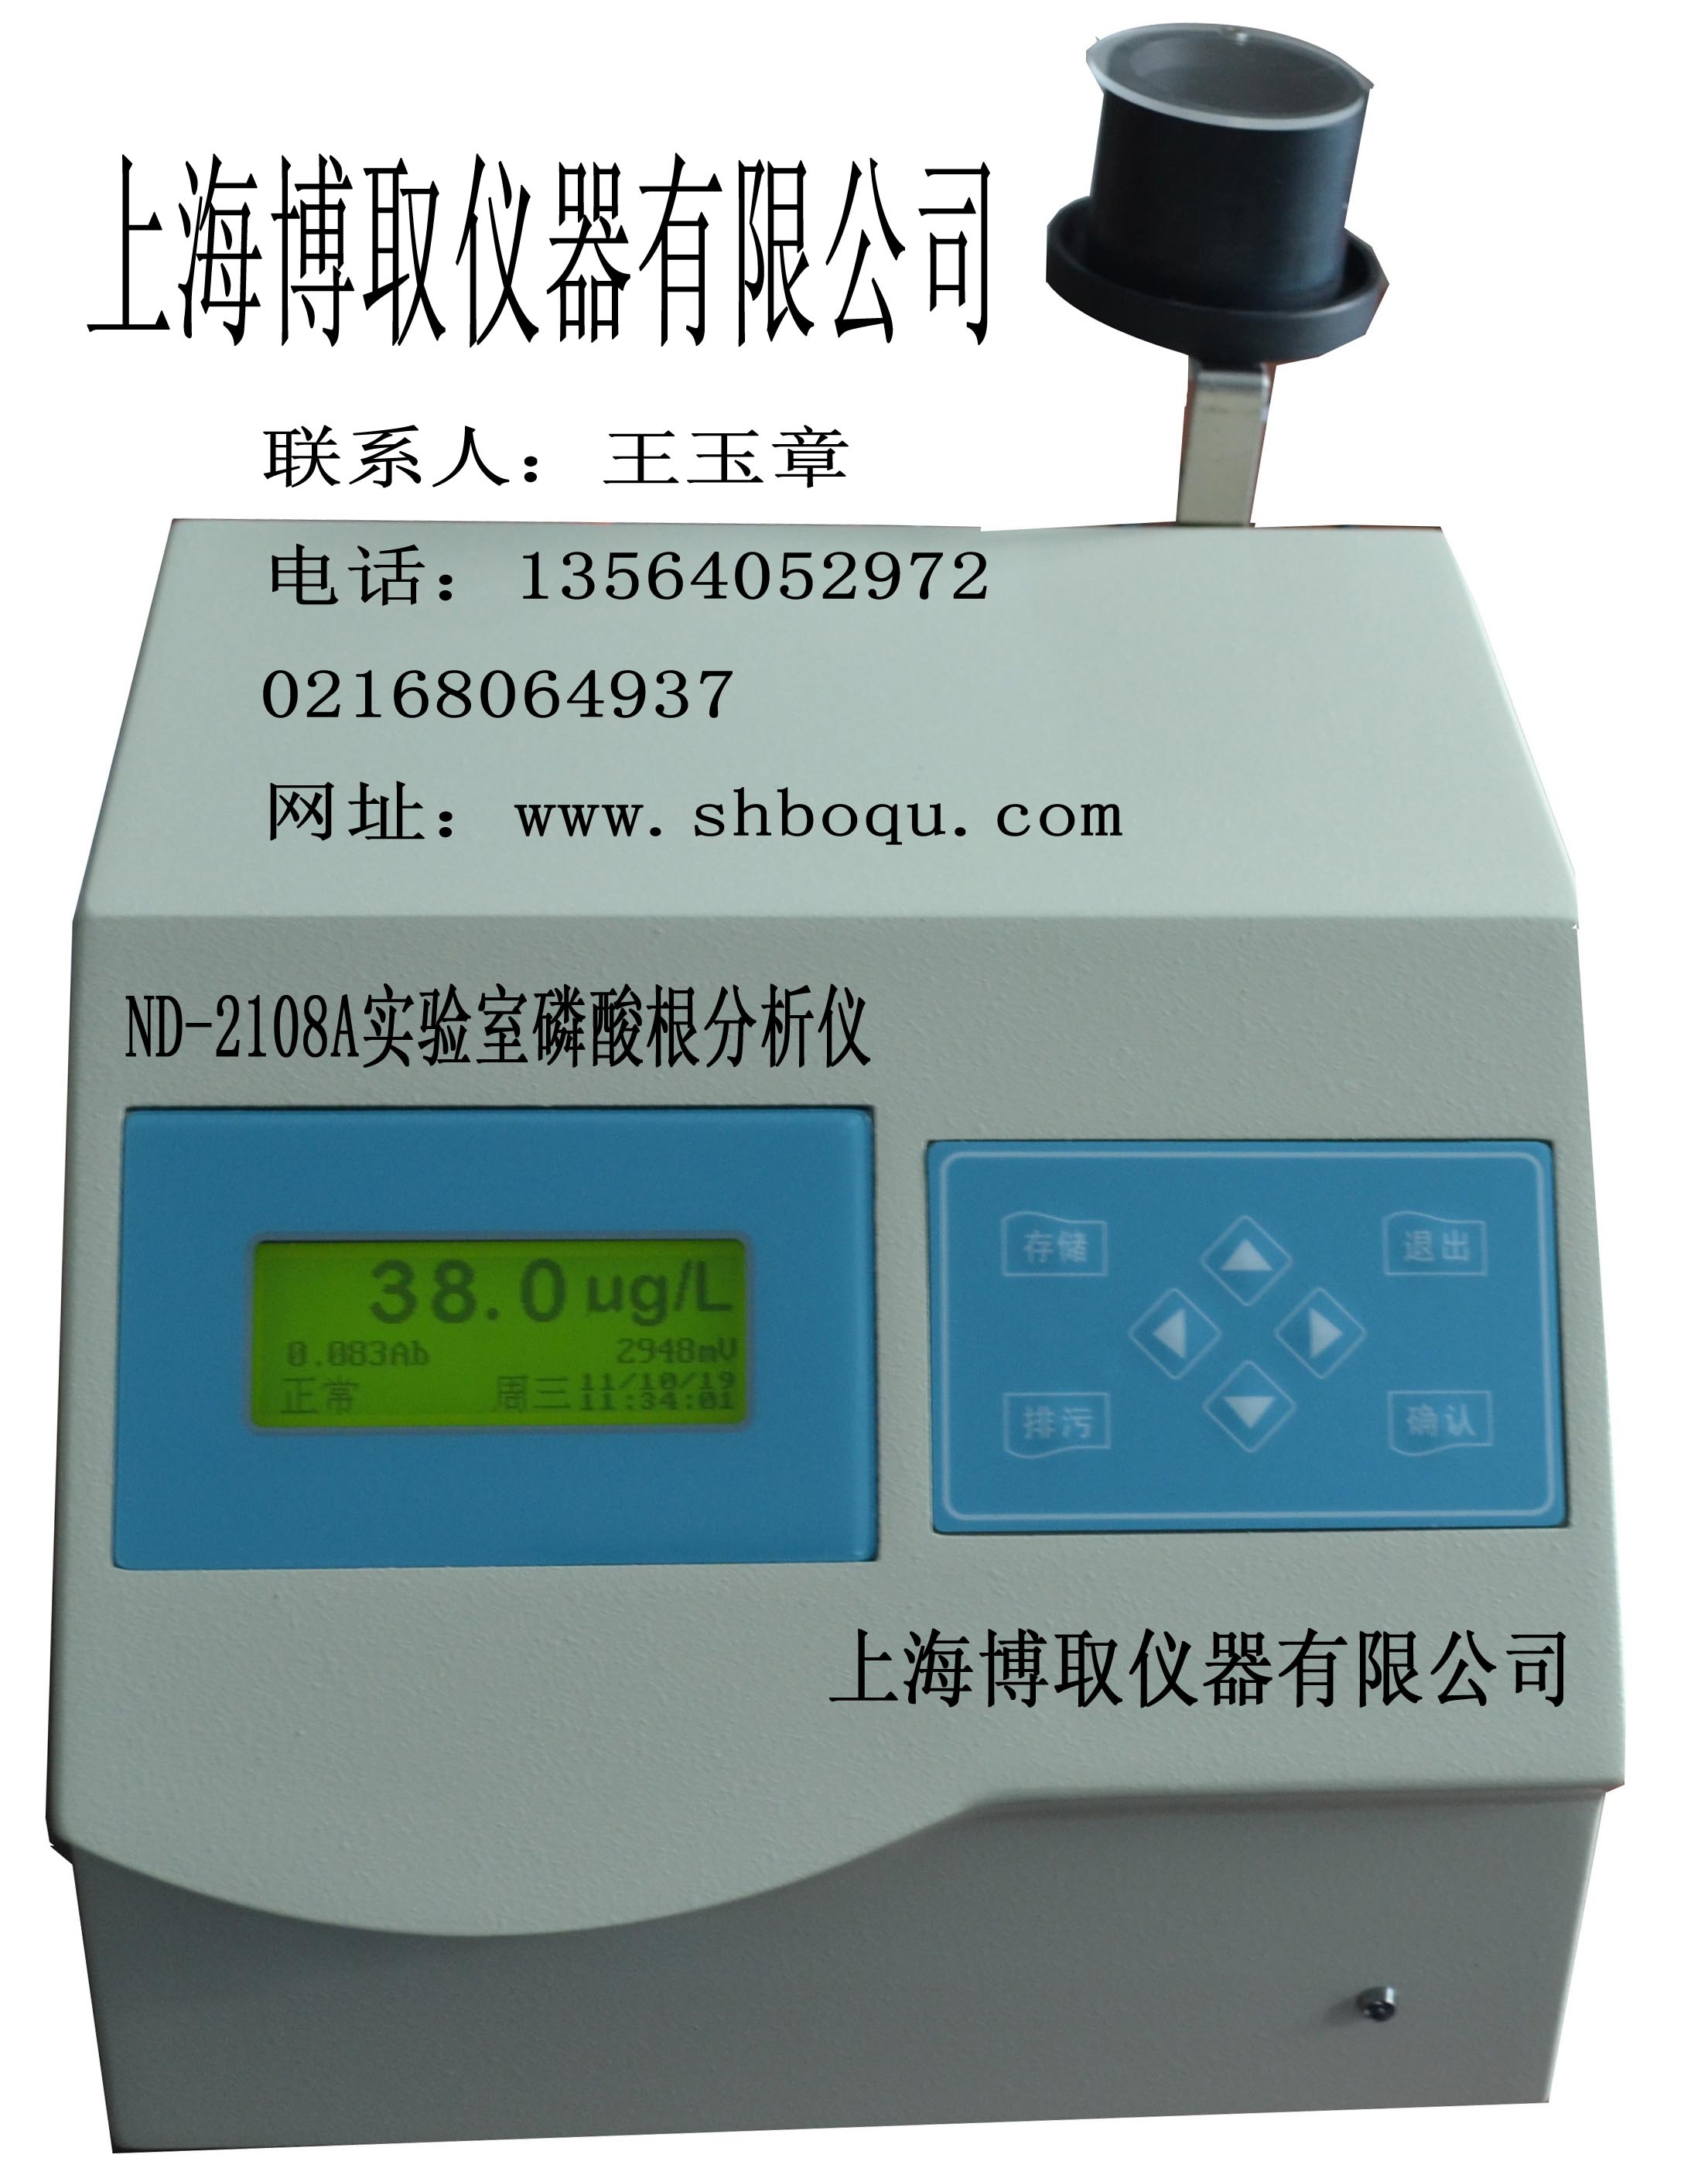 ND-2108A实验室台式磷酸根表|硅酸根检测仪|上海磷表